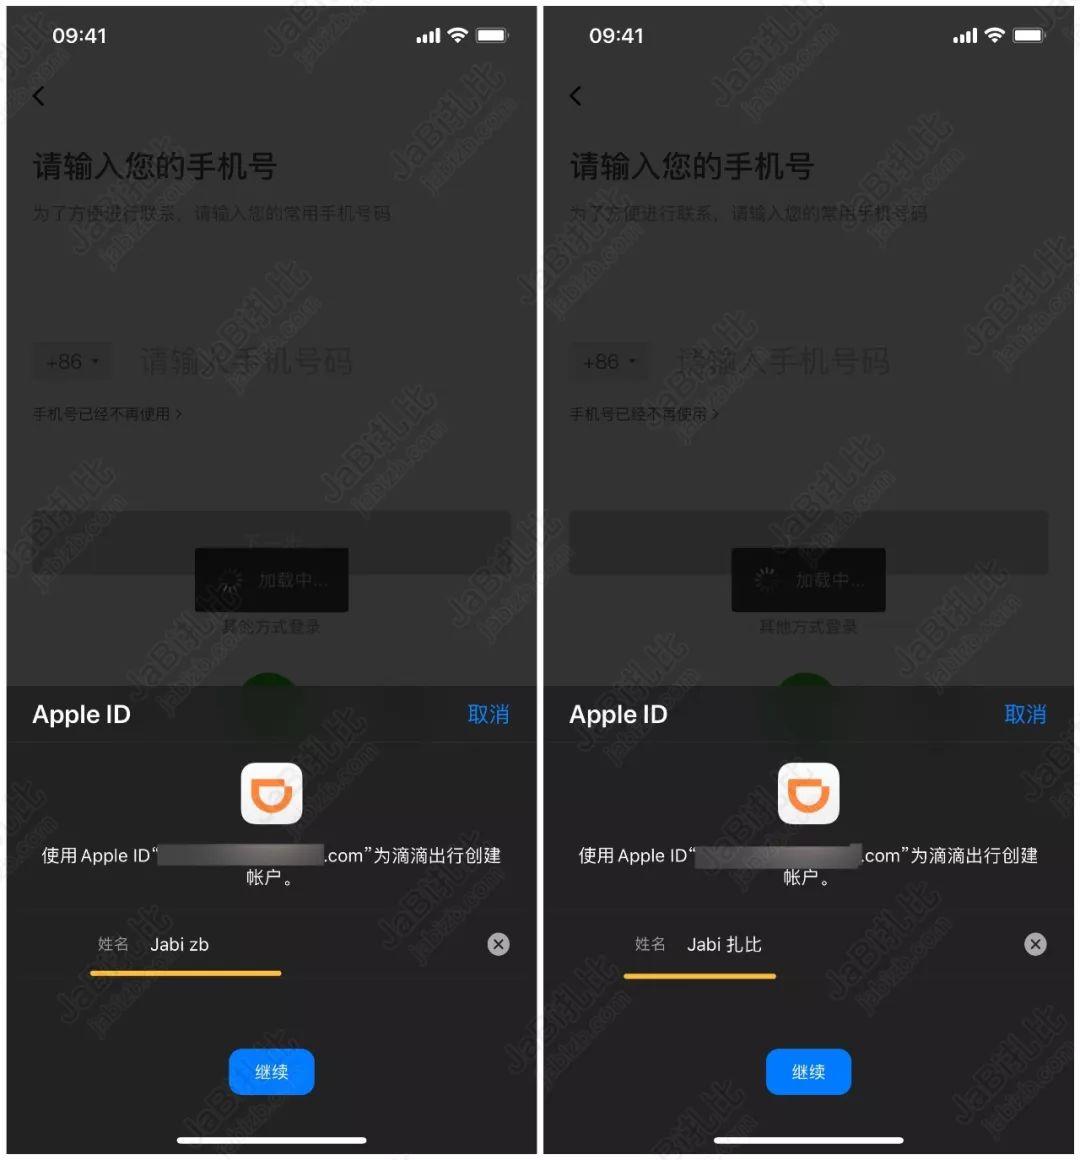 whatsapp官网下载_官网下载波克捕鱼_官网下载饭友app